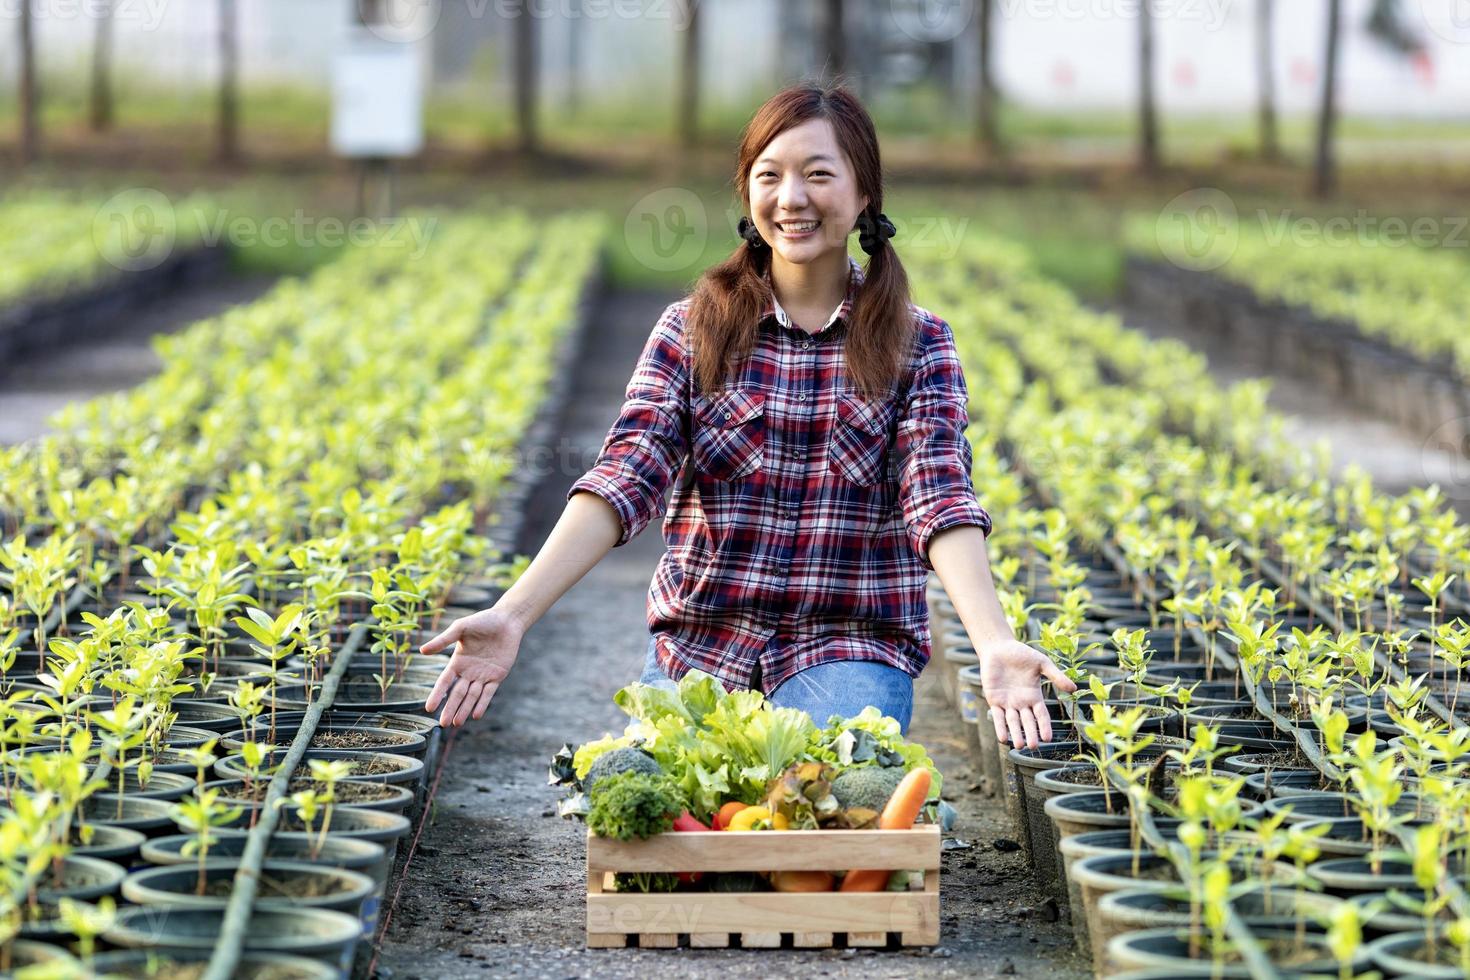 ásia mulher agricultor é mostrando a de madeira bandeja cheio do recentemente escolher orgânico legumes dentro dela jardim para colheita estação e saudável dieta Comida foto